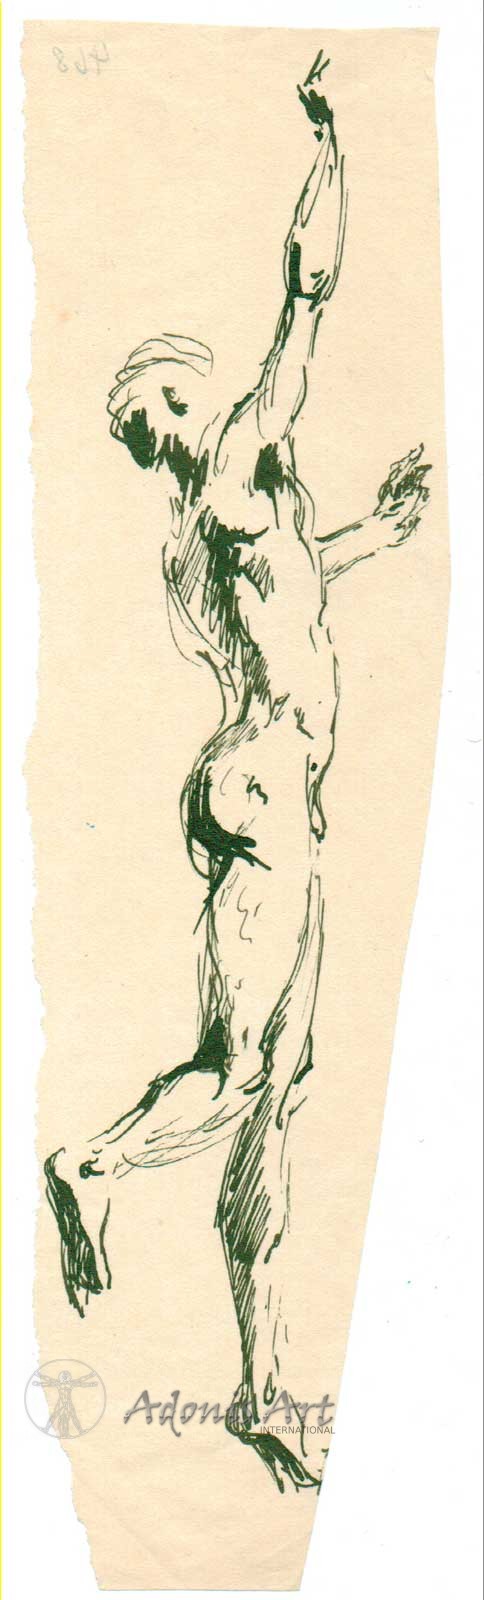 'Stretching Figure' by Wilhelm Heinrich Focke